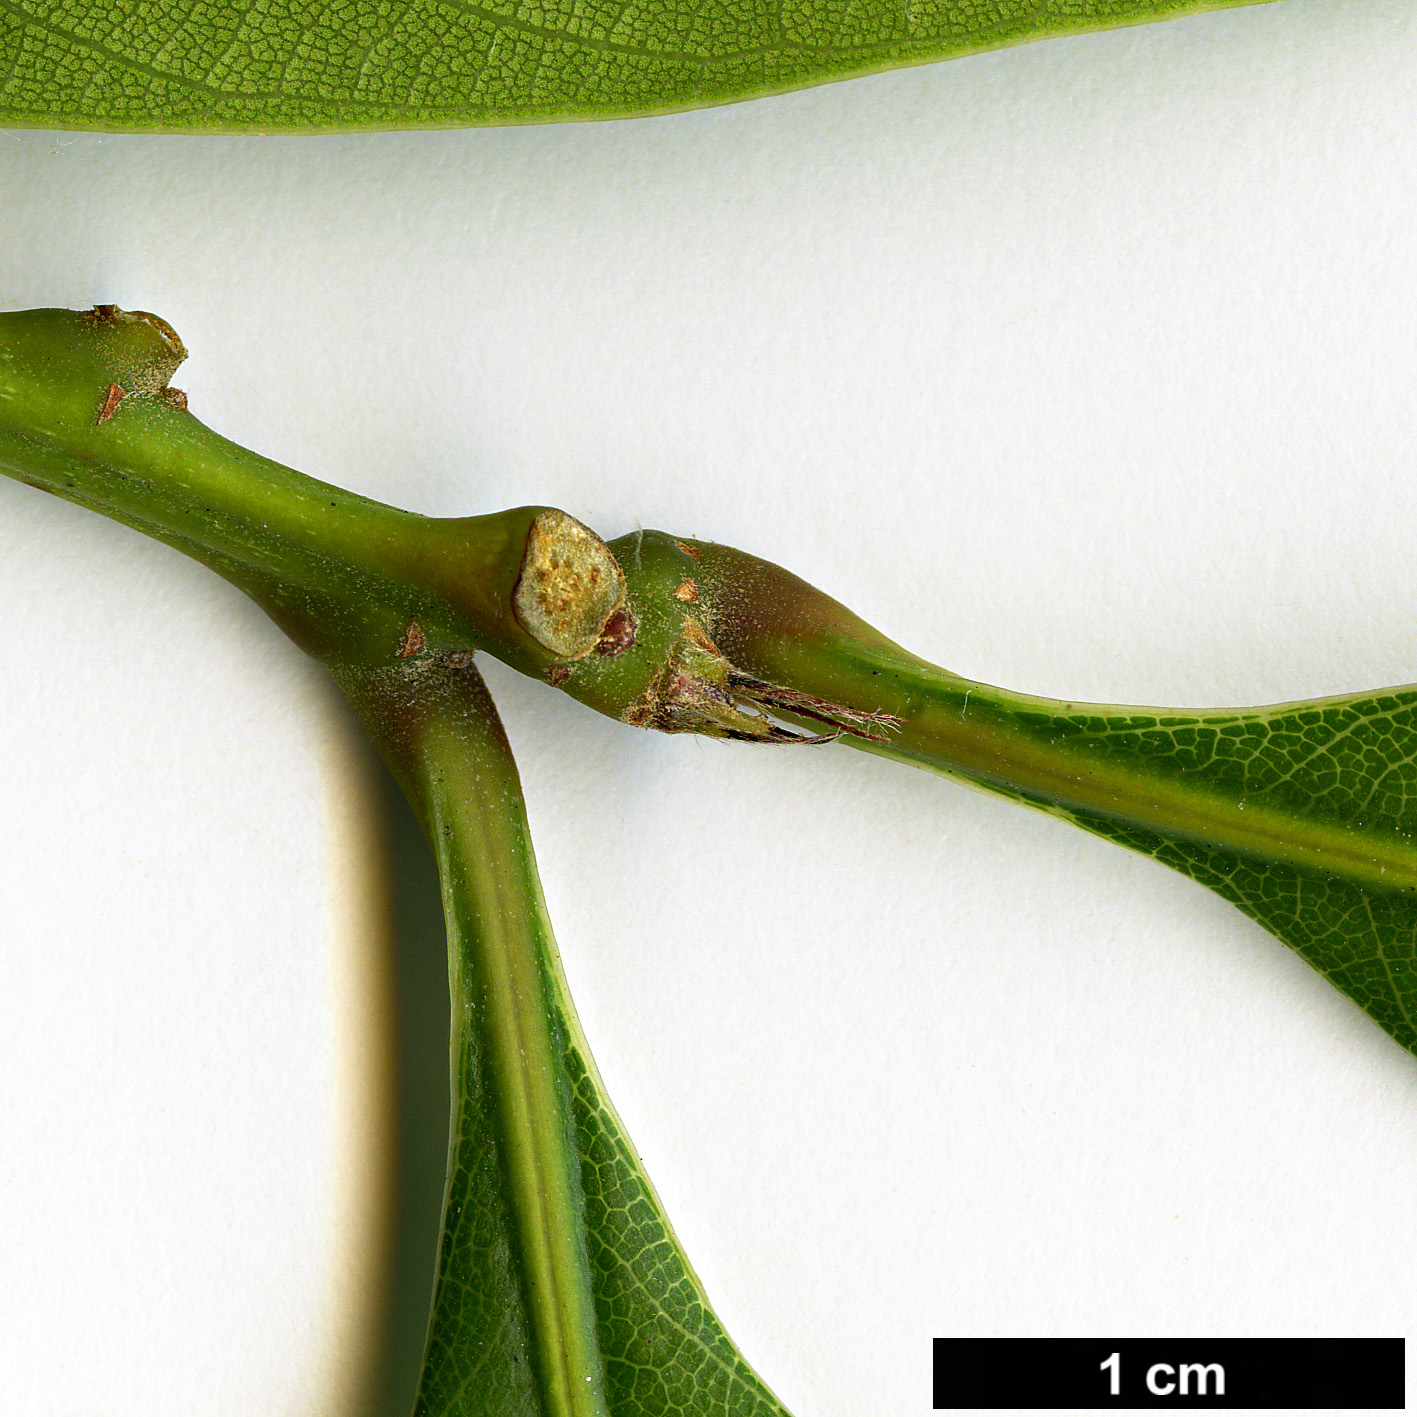 High resolution image: Family: Fagaceae - Genus: Lithocarpus - Taxon: brevicaudatus